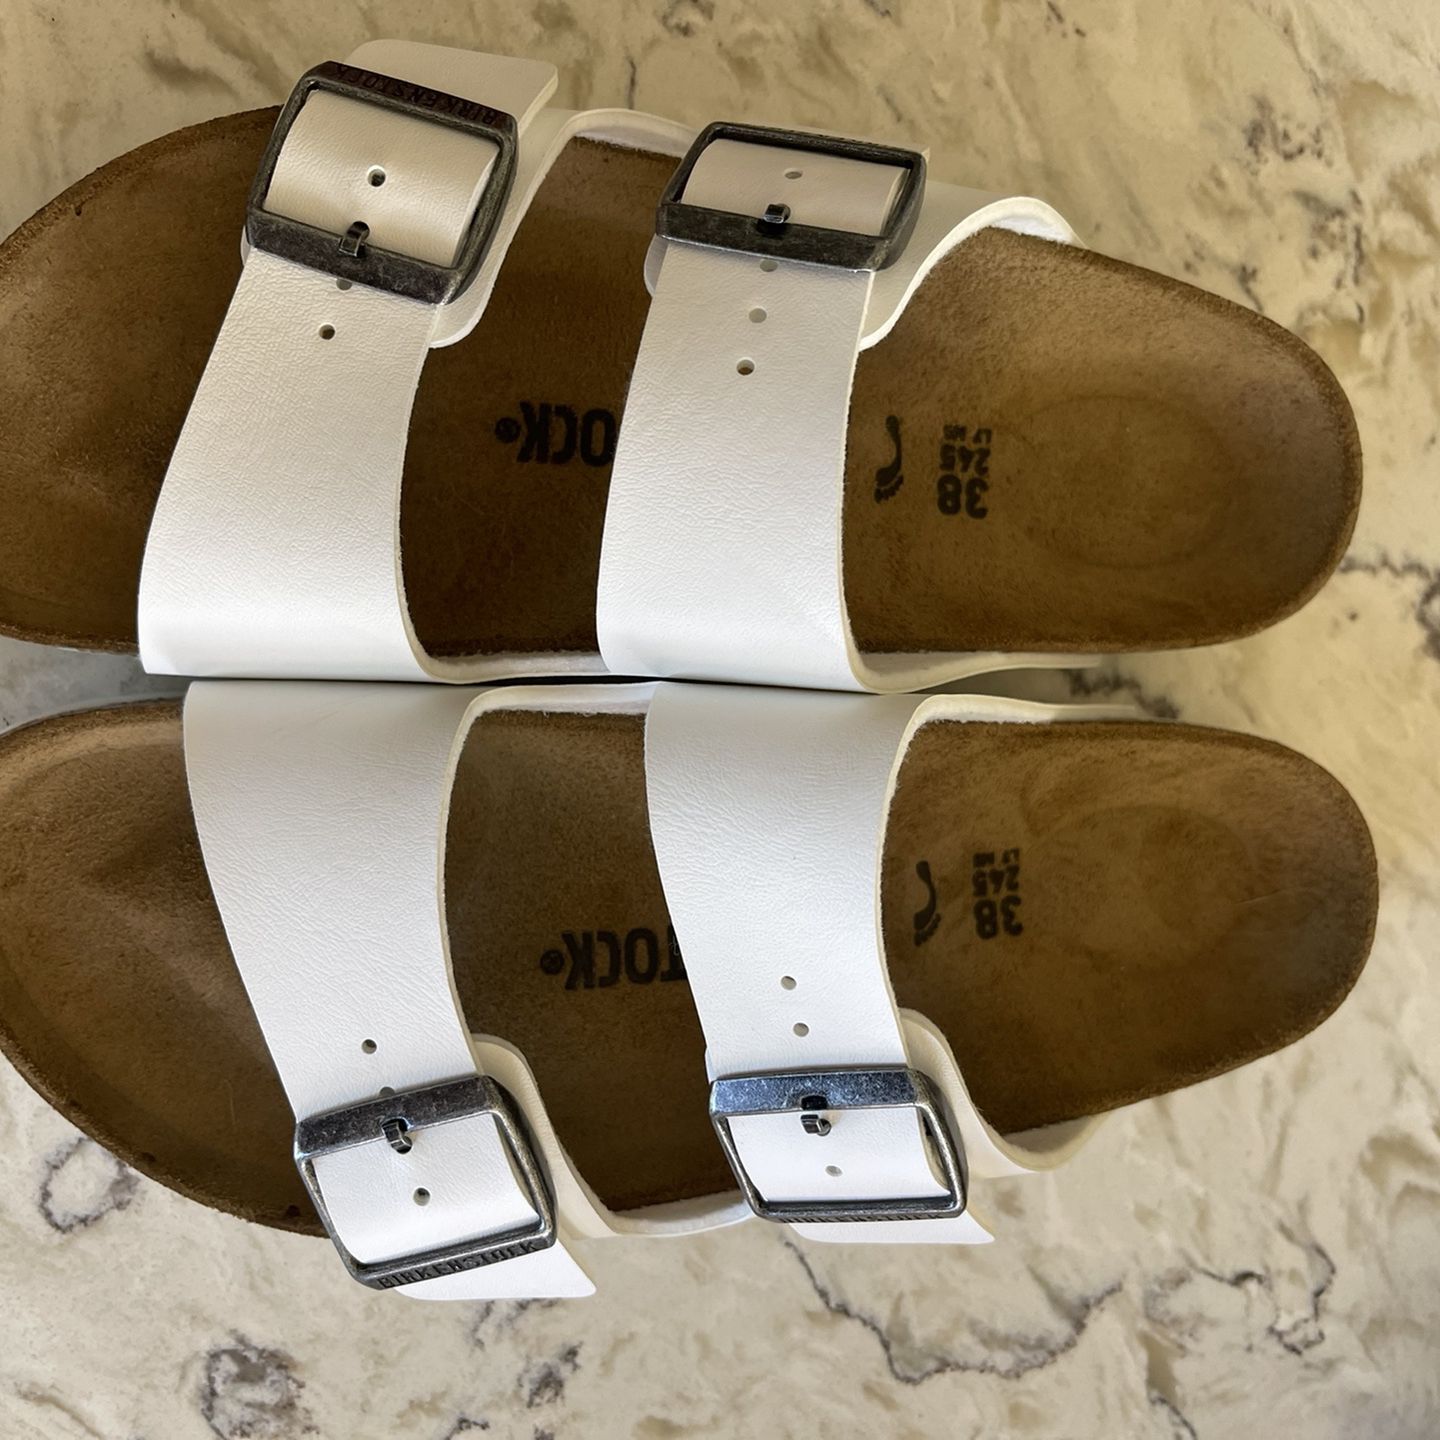 Birkenstock Arizona Sandals 